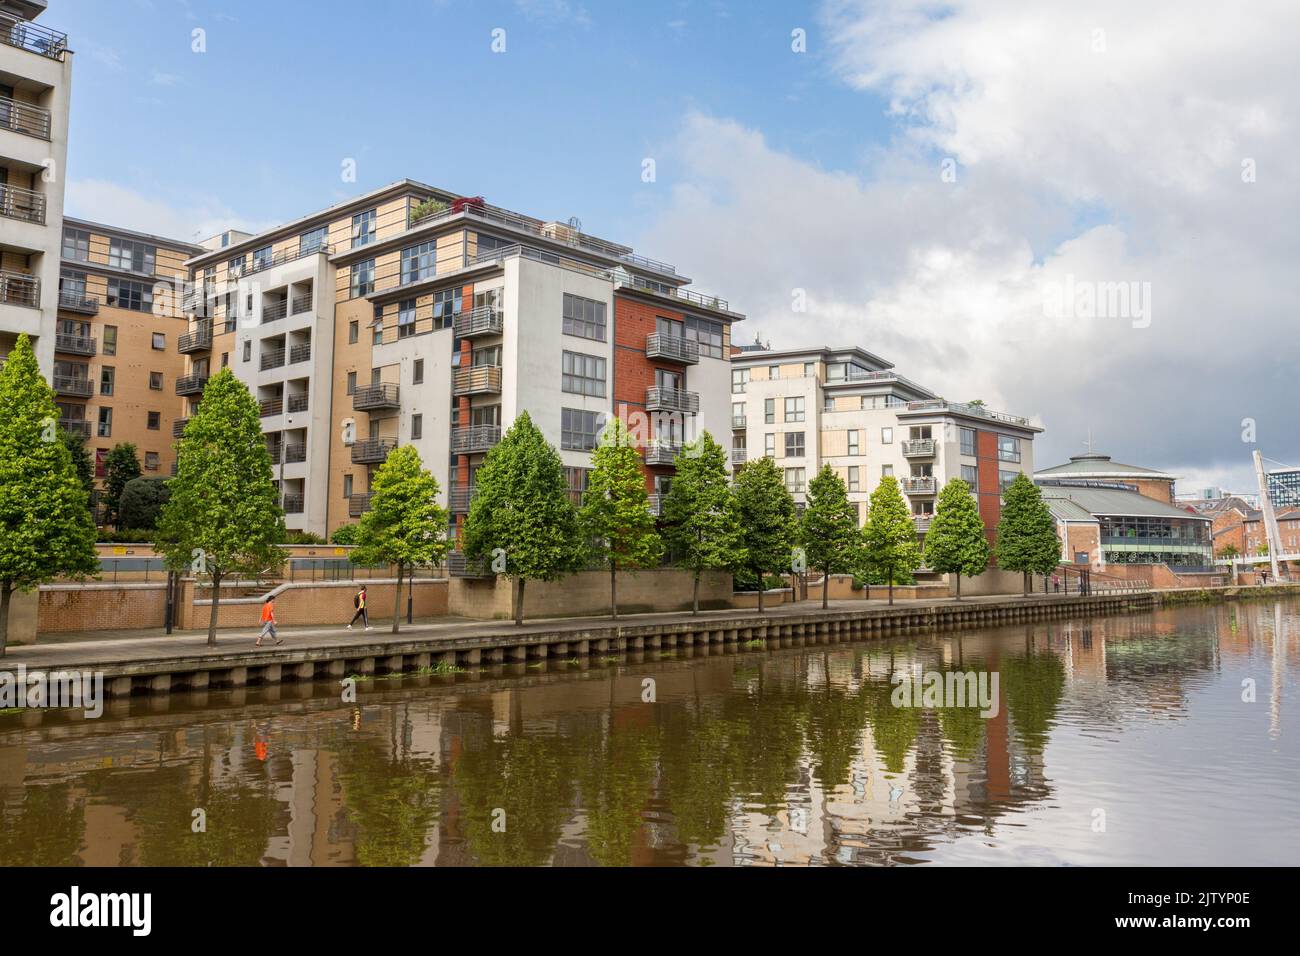 Brewery Wharf, un développement mixte avec des magasins, des bureaux et des installations de loisirs près de la rivière aire, Leeds, West Yorkshire, Royaume-Uni. Banque D'Images